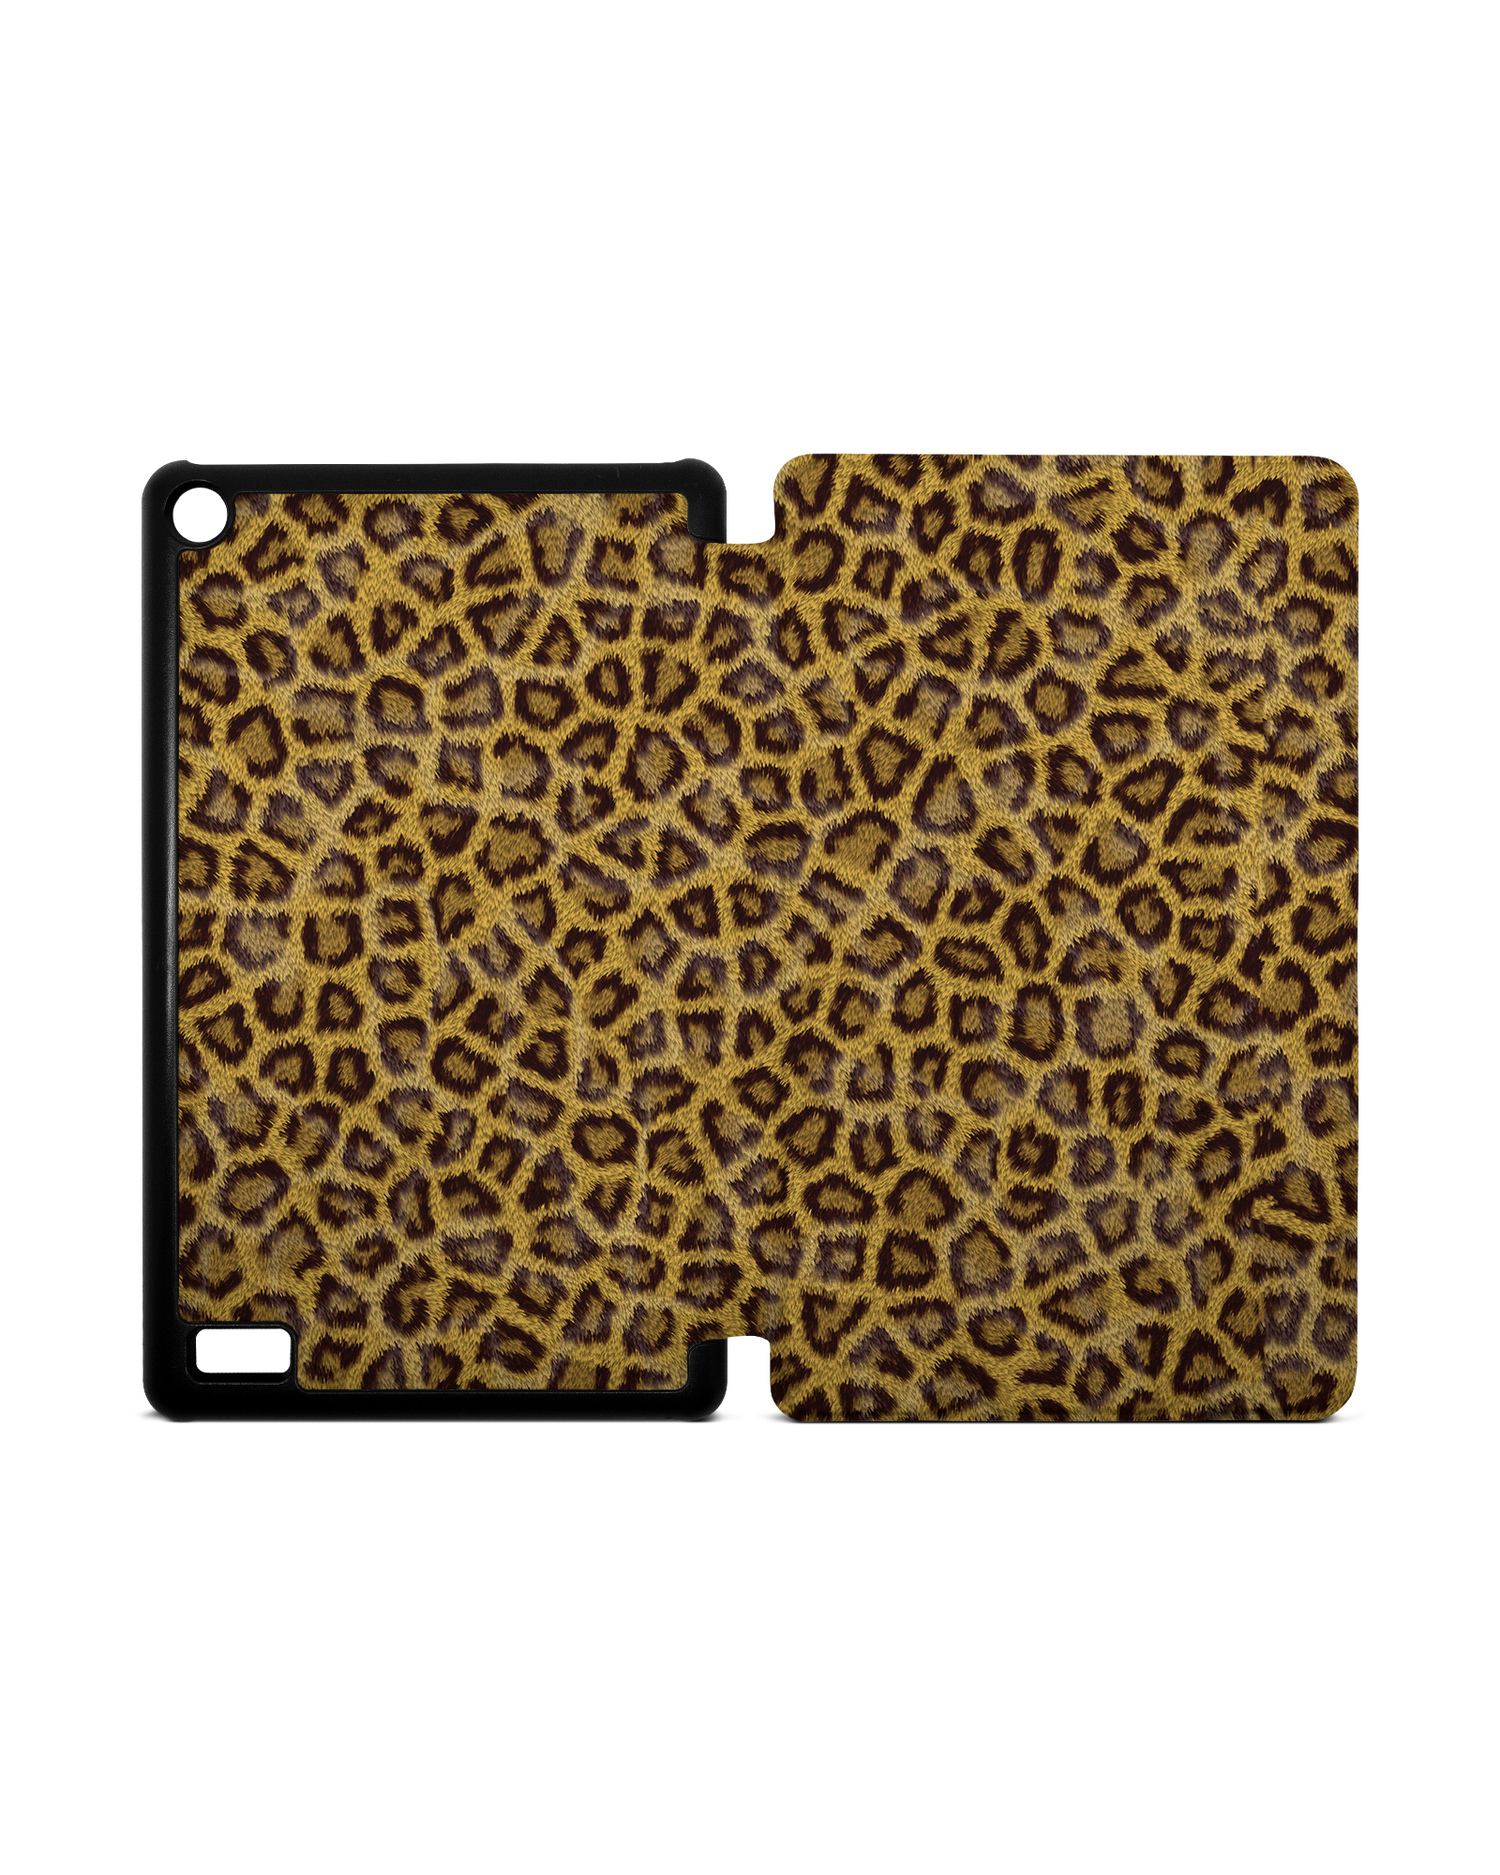 Leopard Skin Tablet Smart Case für Amazon Fire 7: Aufgeklappt